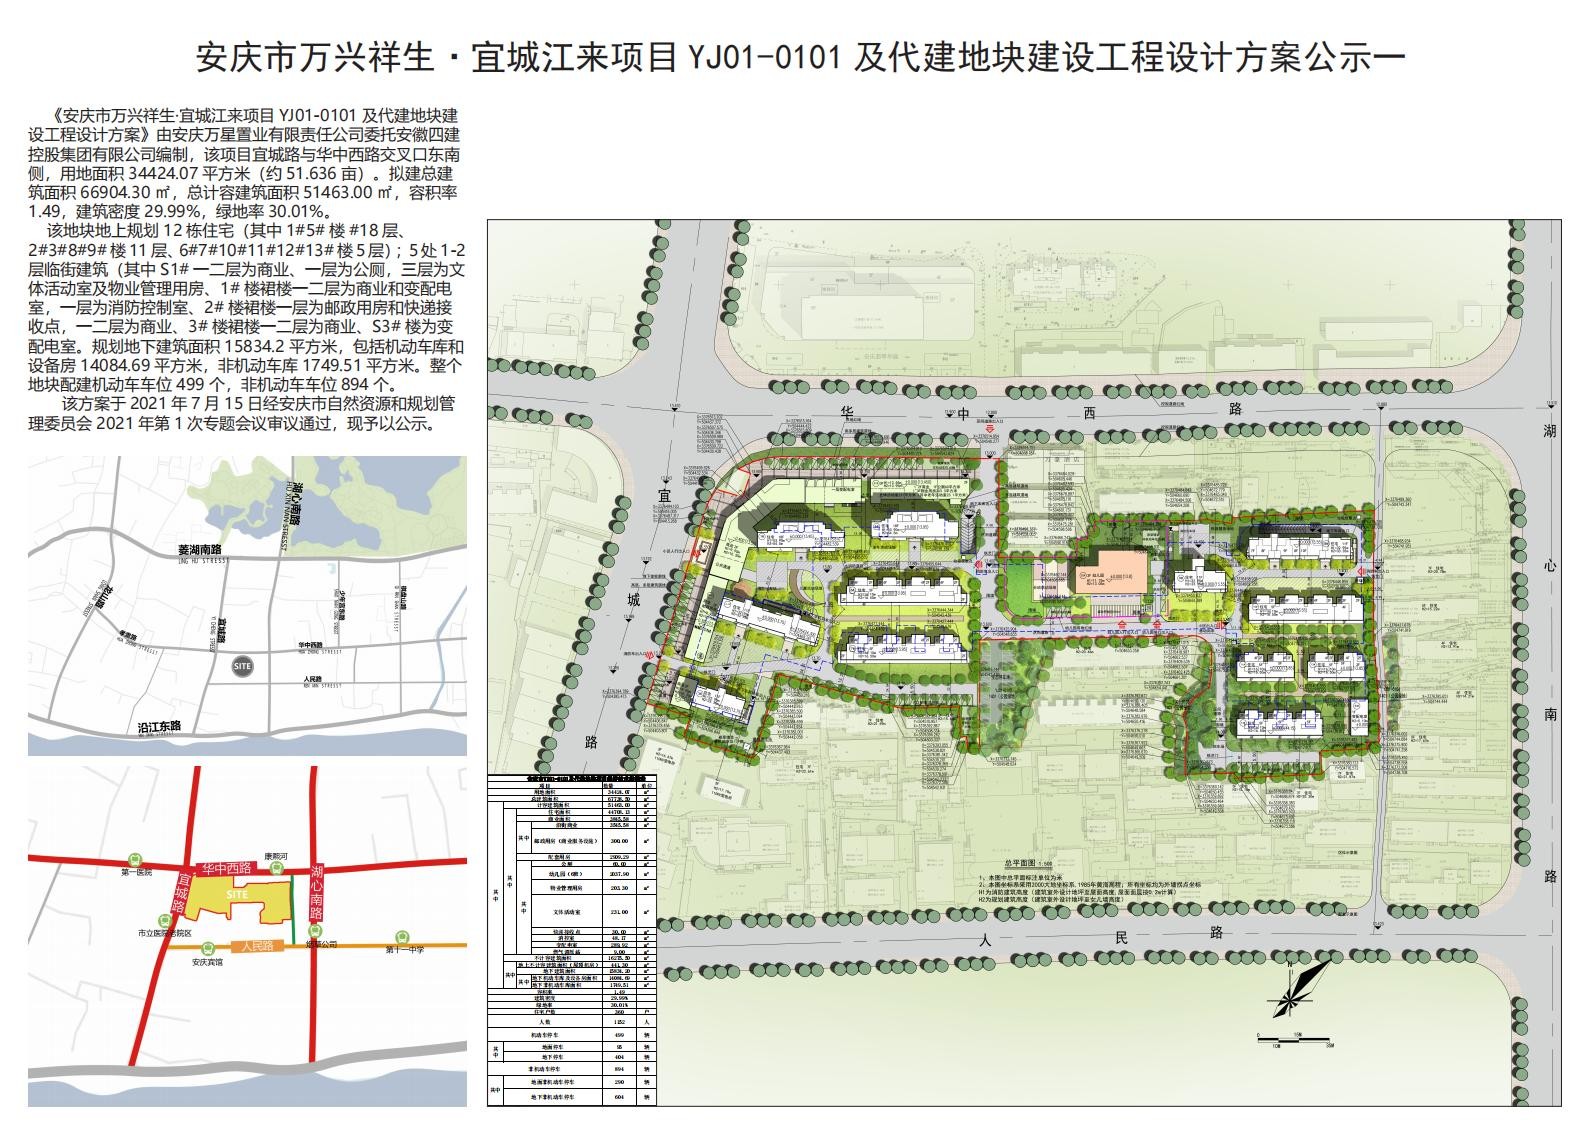 安庆市万兴祥生·宜城江来项目YJ01-0101及代建地块 建设工程设计方案公示啦！